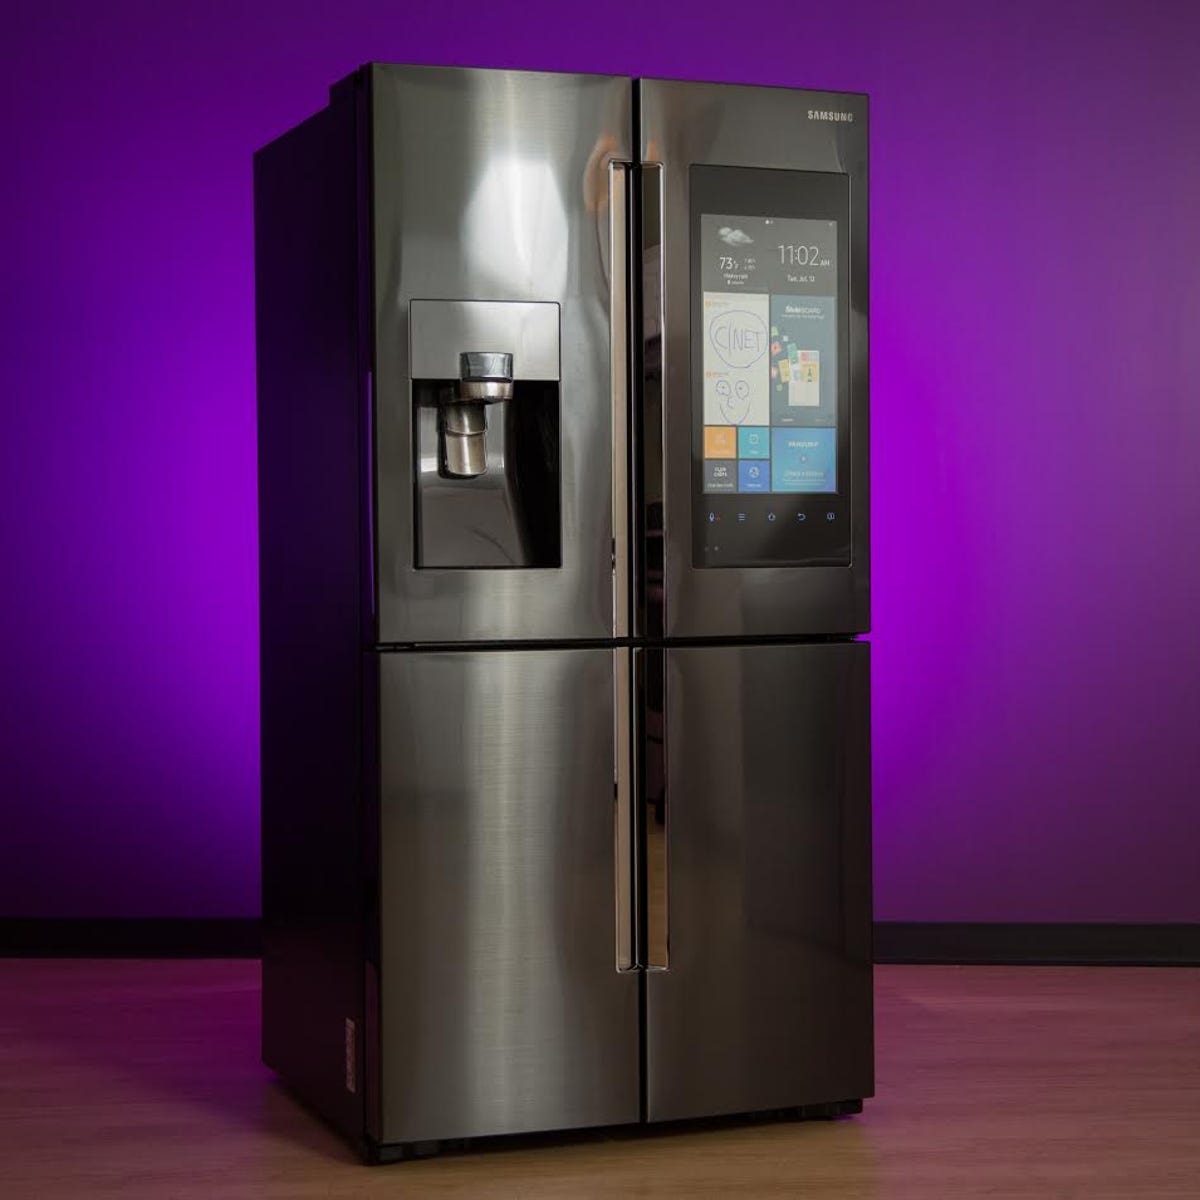 Samsung Family Hub Refrigerator review: Finally, a smart fridge